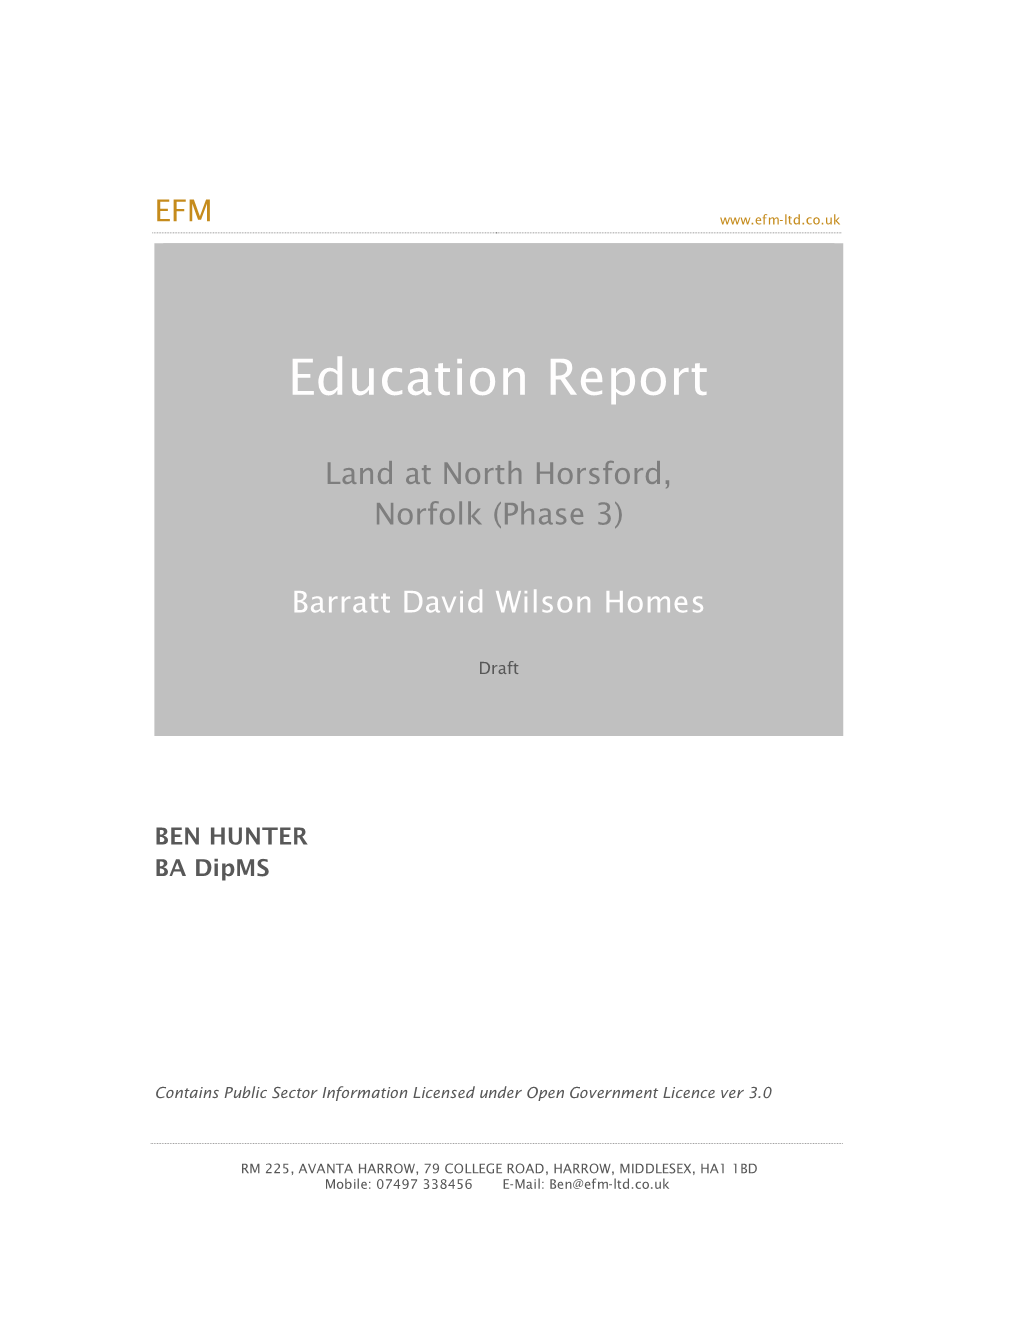 Phase 3, Horsford, Norfolk, EFM Education Report